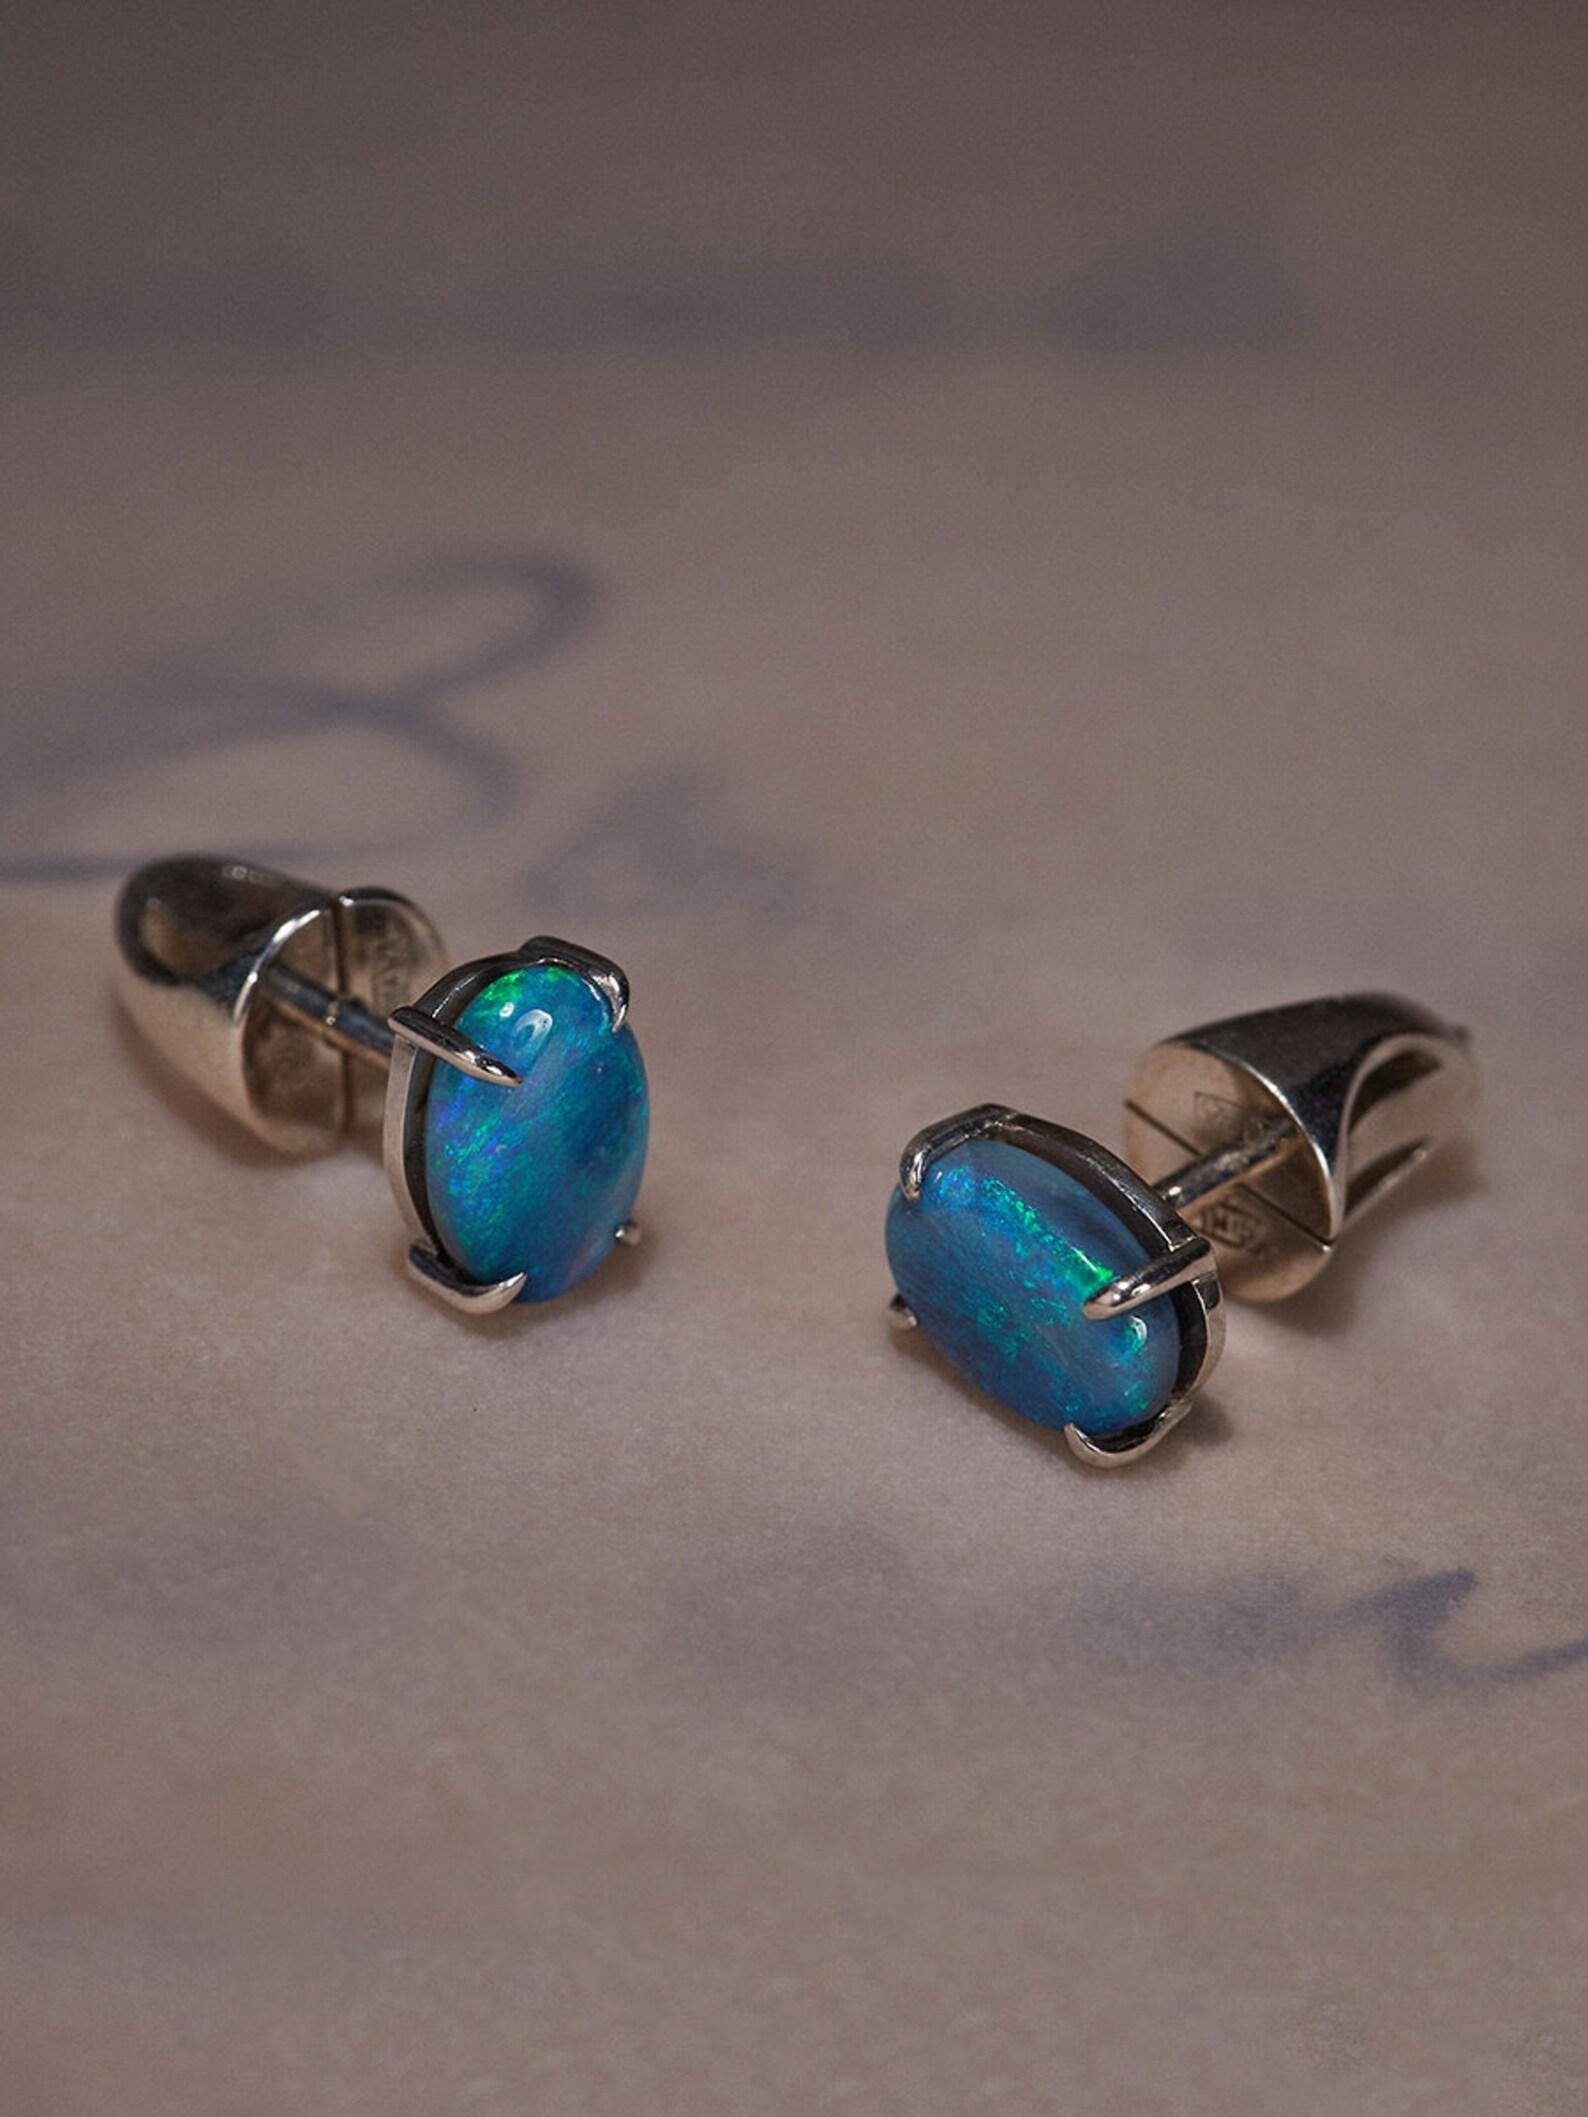 Oval Cut Black Opal Studs Earrings Natural Blue Australian Gemstones Unisex Jewelry For Sale